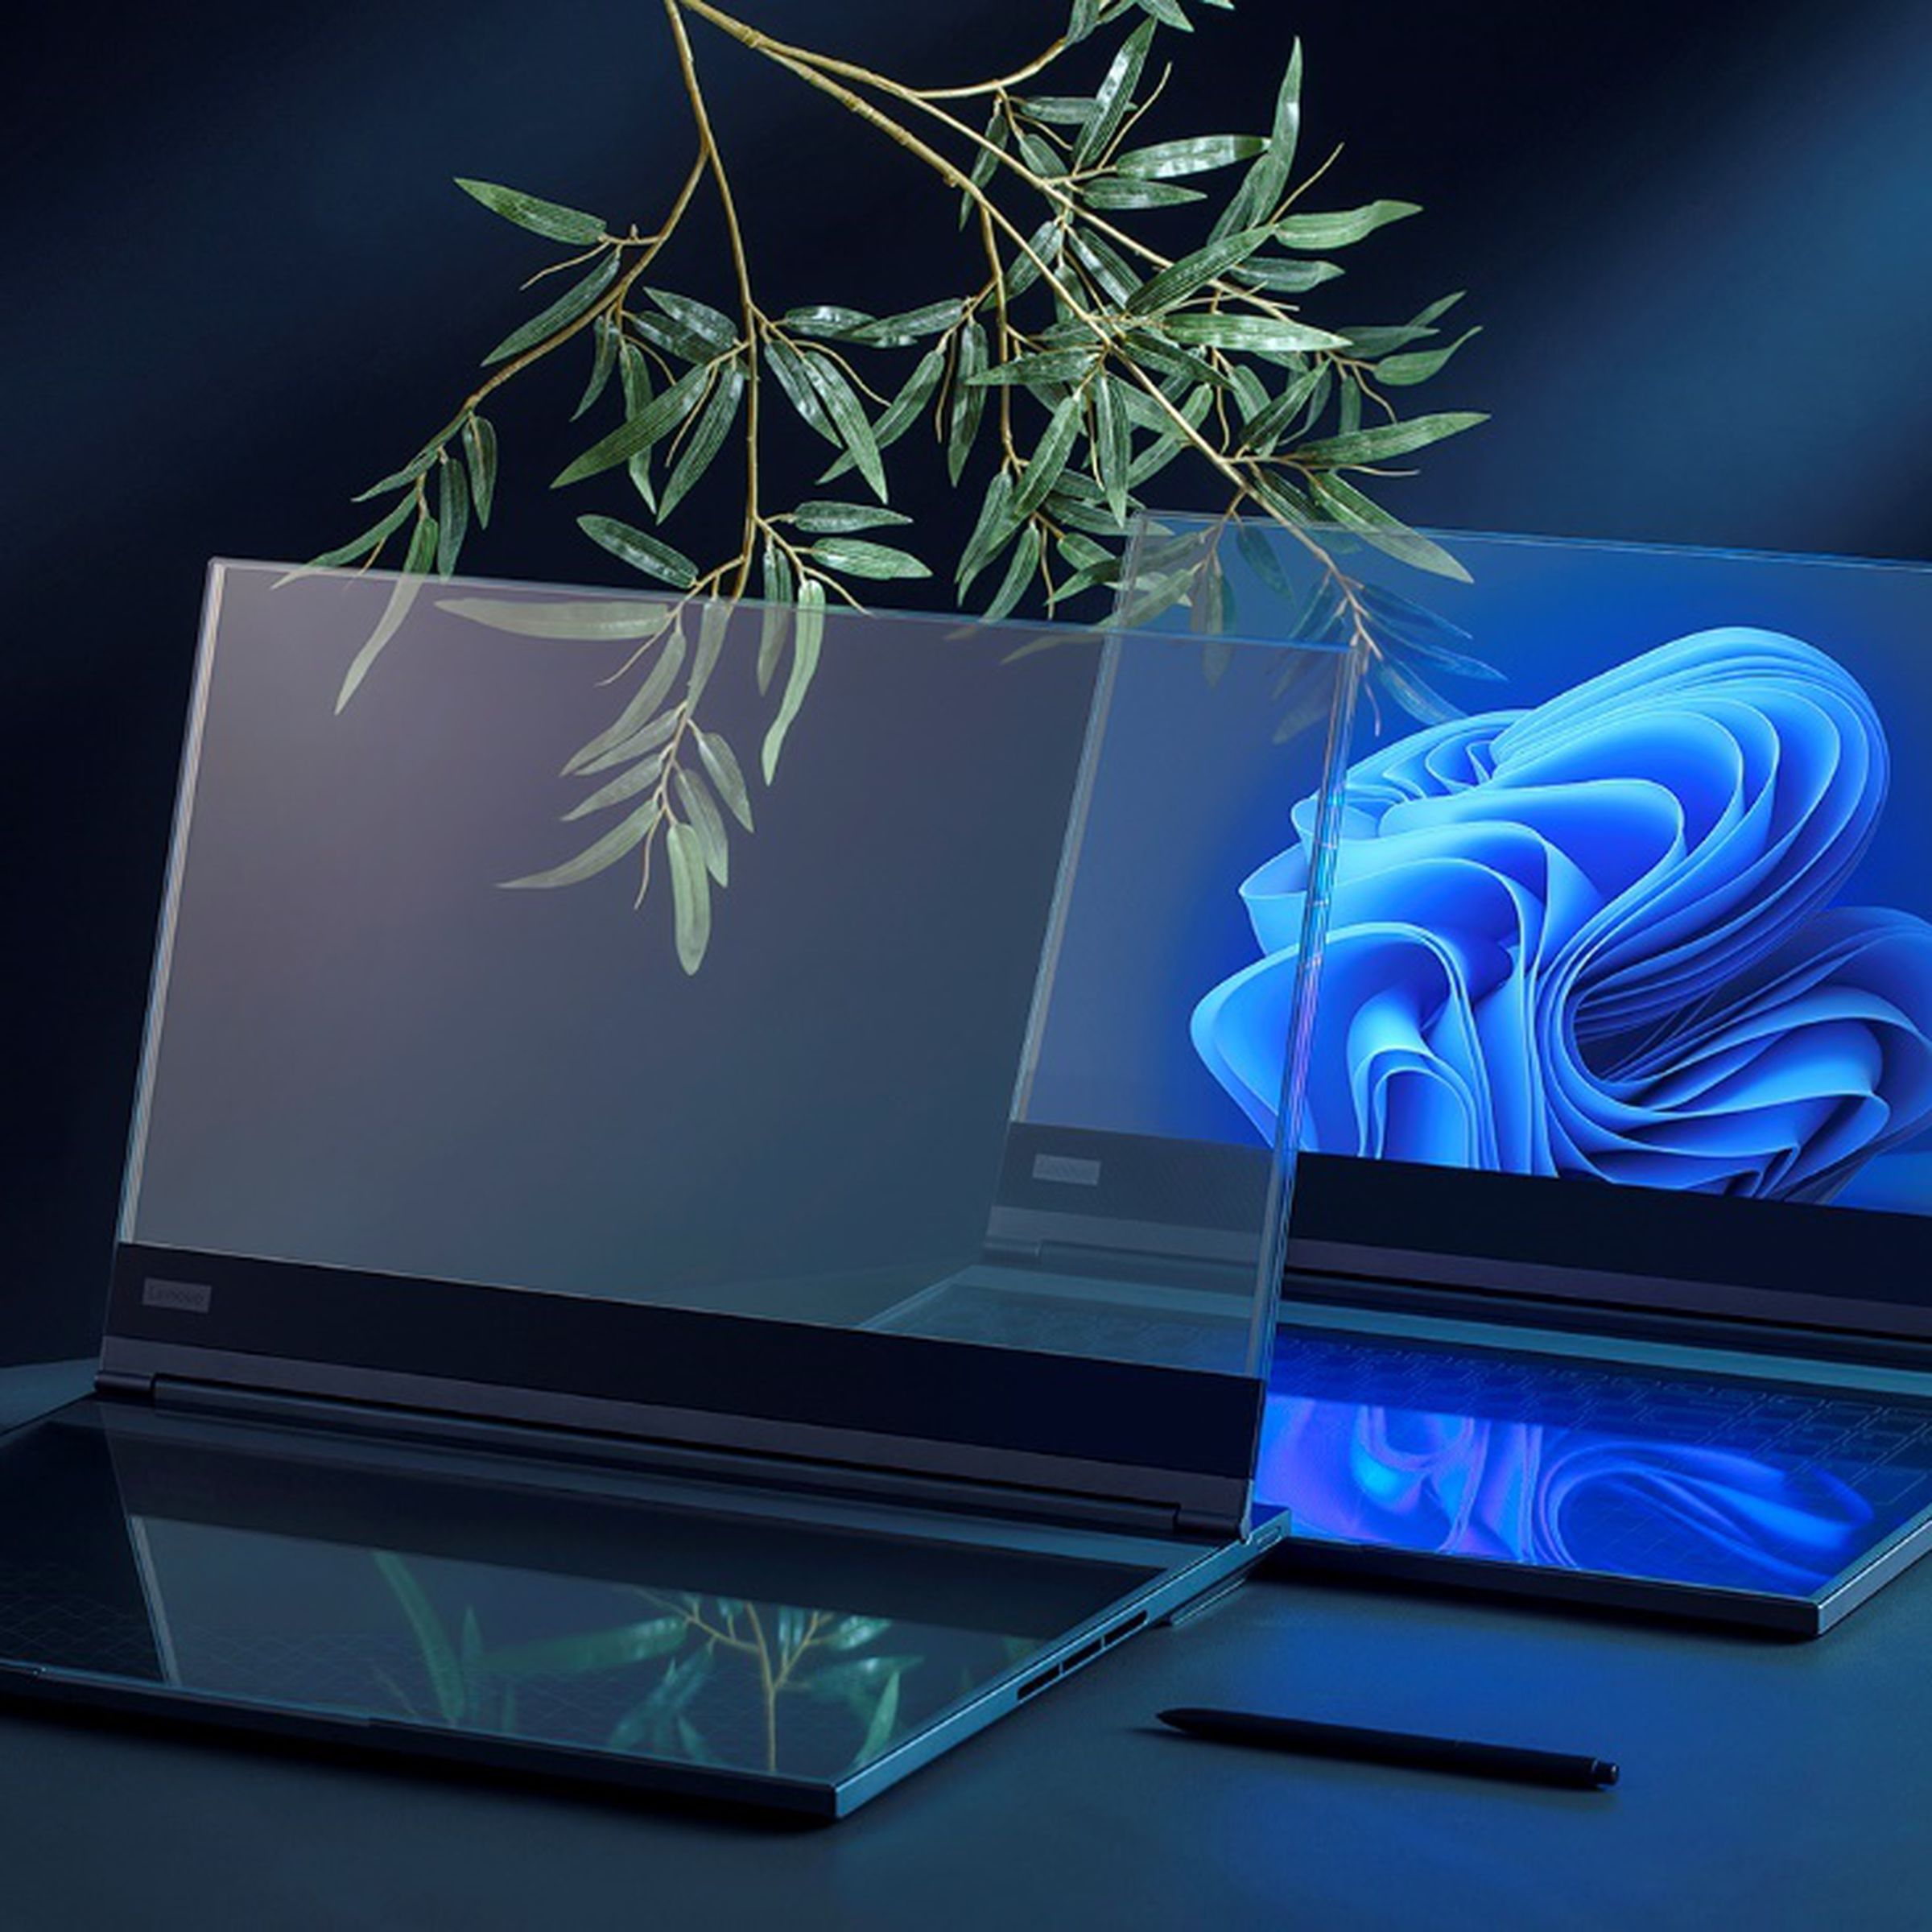 Two transparent laptop concepts sit on a desk.